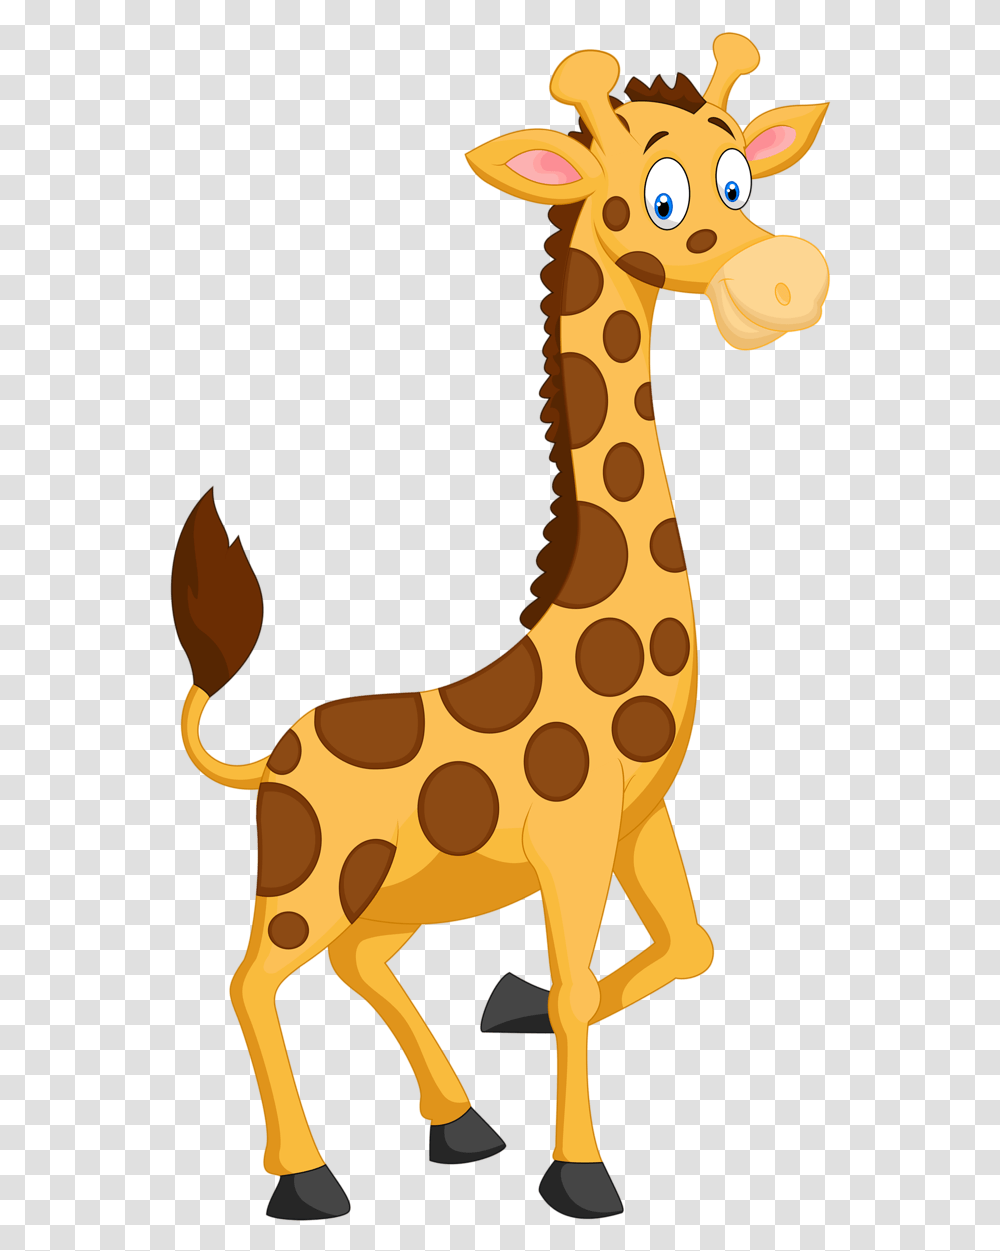 Clip Art And Rock Clip Art Giraffe Giraffe Animals Cartoon, Mammal, Wildlife Transparent Png